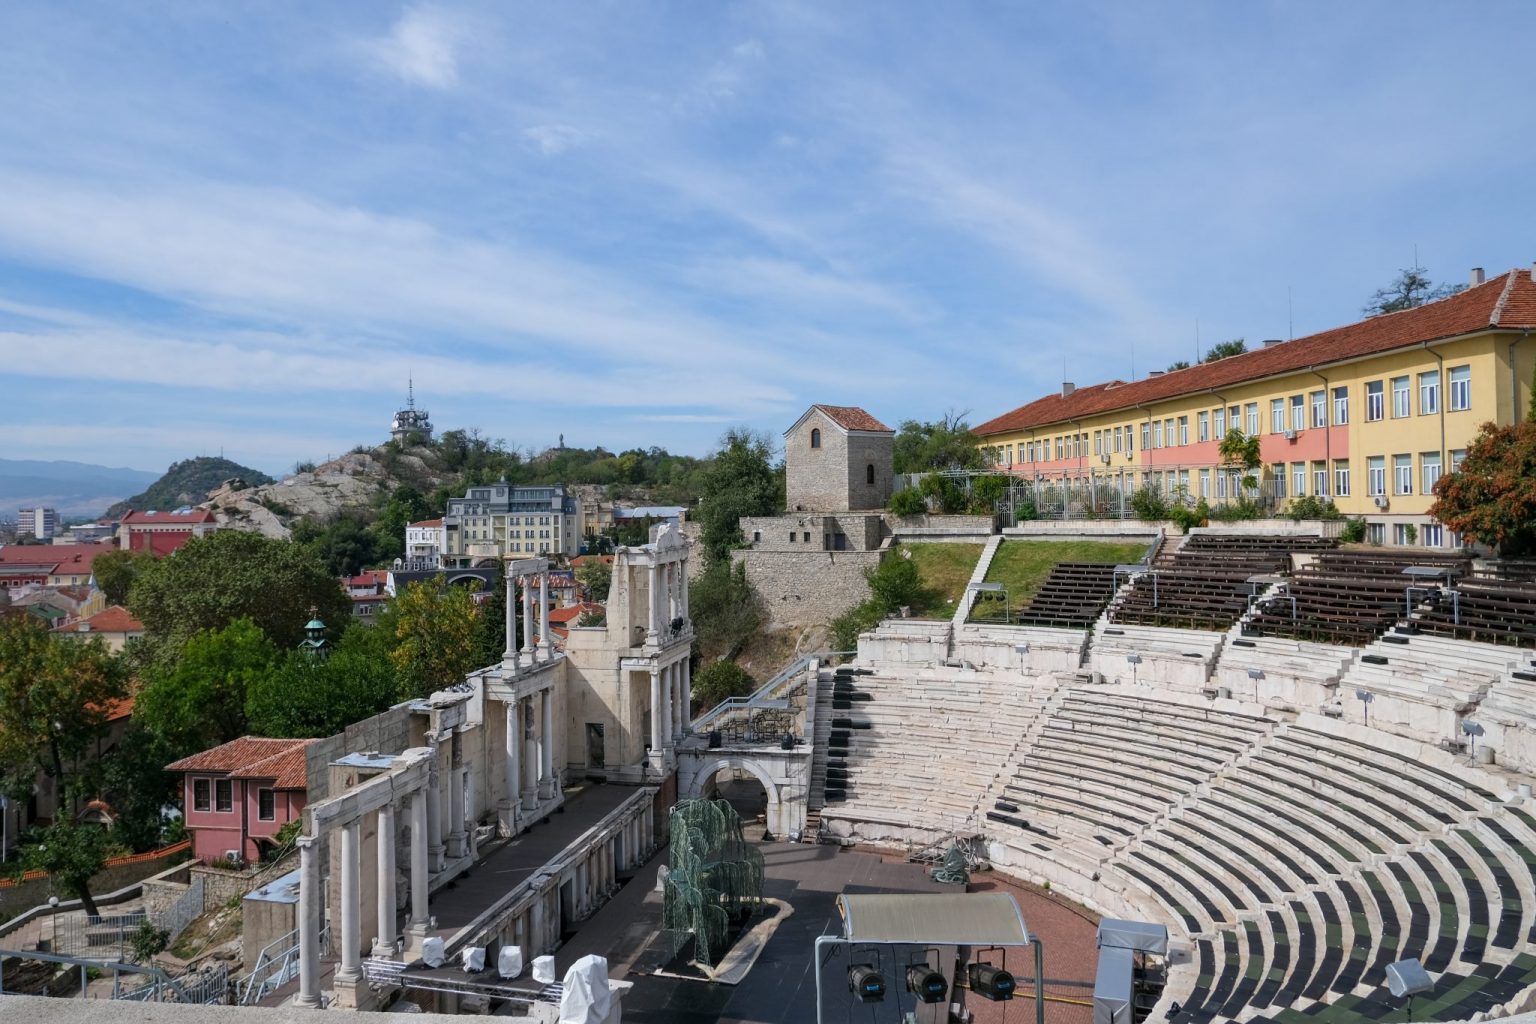 Foto dell'anfiteatro di Plovdiv, Bulgaria.